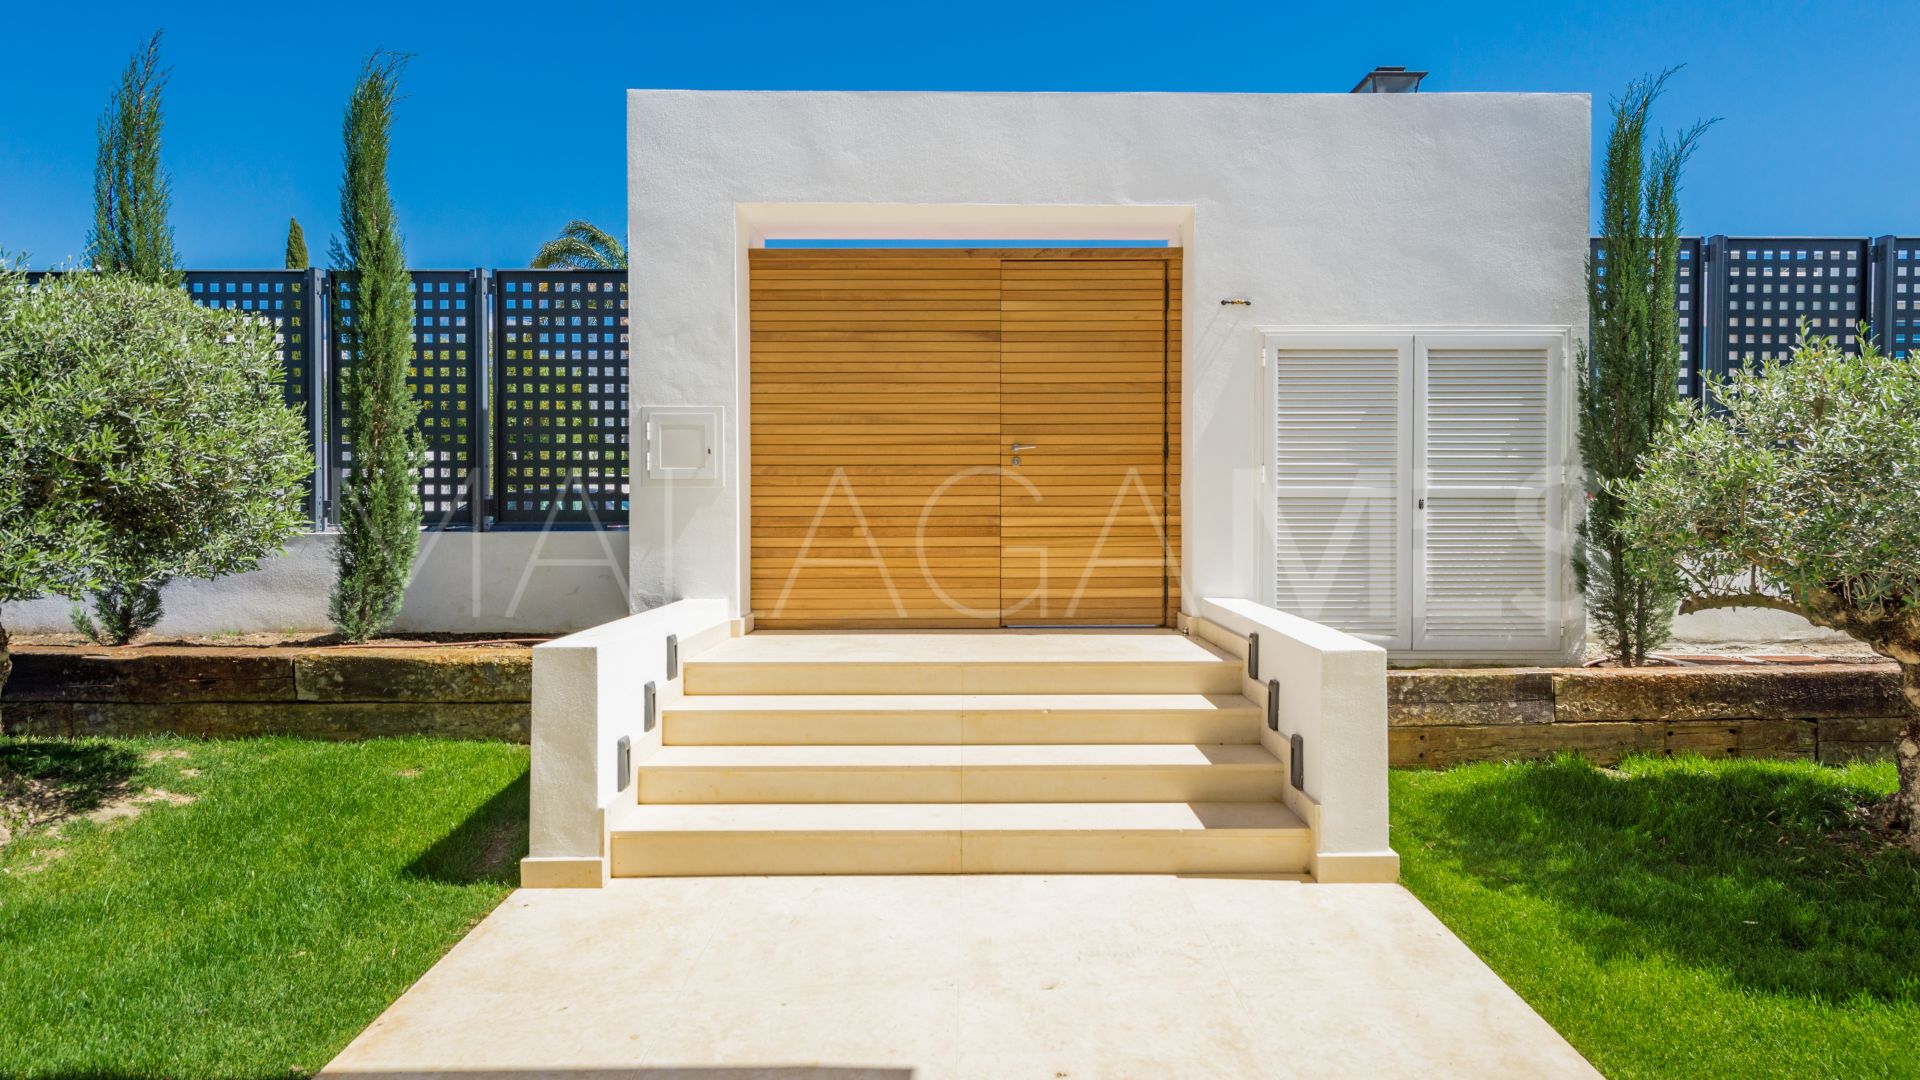 For sale villa with 4 bedrooms in Haza del Conde